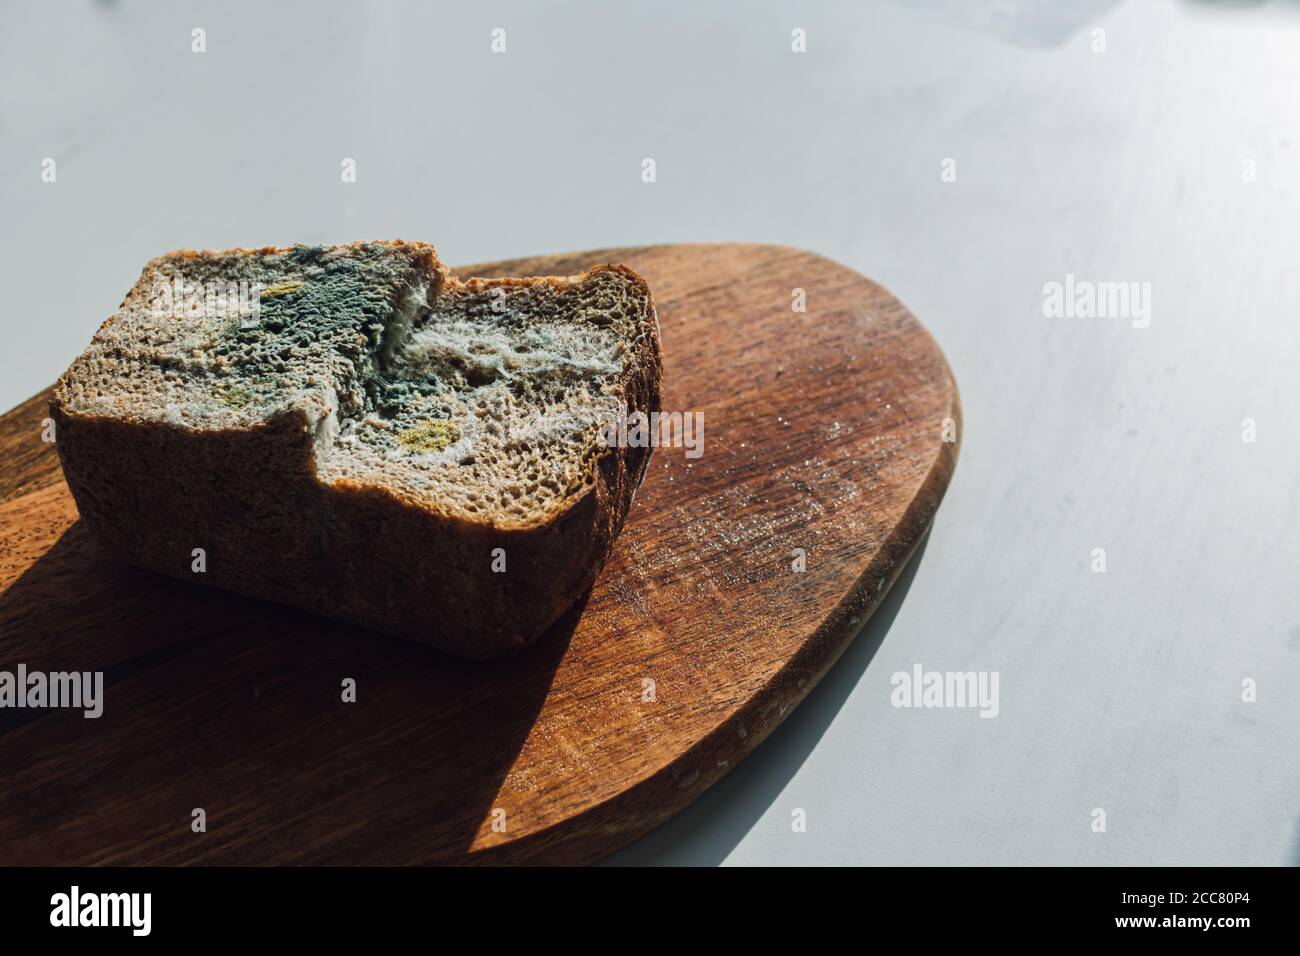 Molde sobre pan, un trozo de pan de centeno con molde blanco y verde sobre una tabla de madera. La fecha de mejor antes ha caducado. Foto de stock